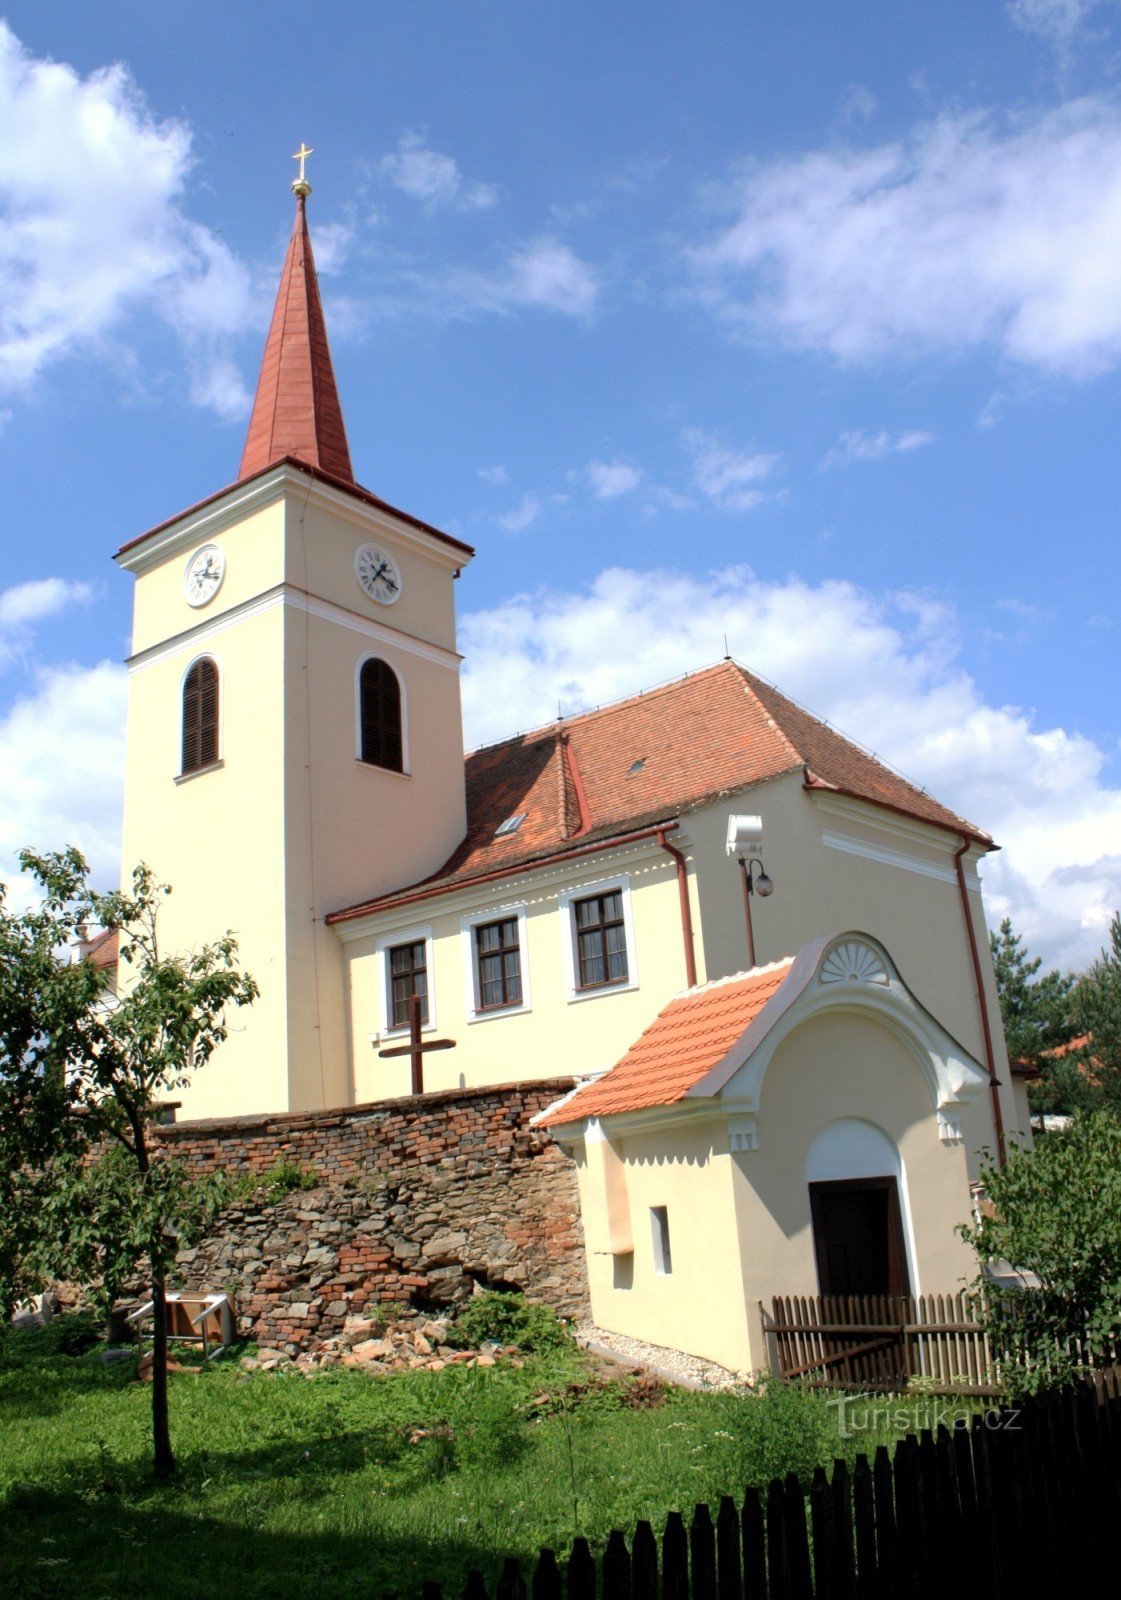 Domašov - Church of St. Lawrence